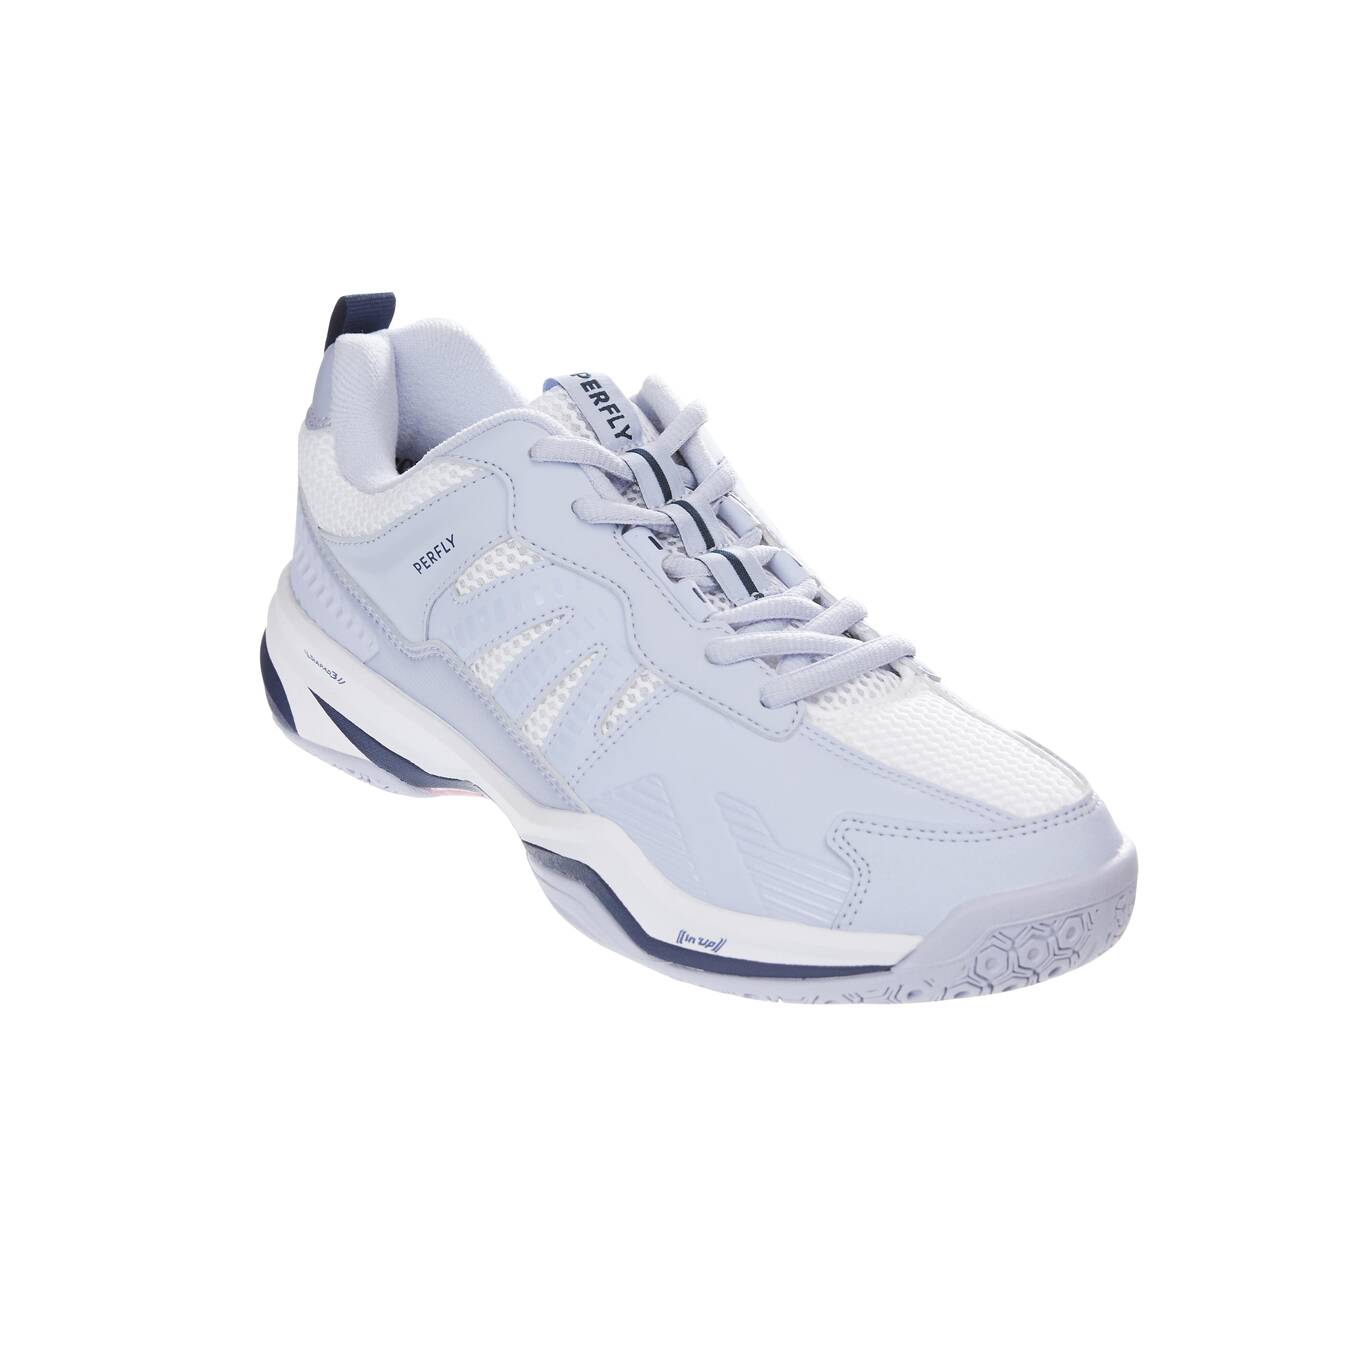 Sepatu Badminton BS 590 Wanita Max Comfort - Biru Abu